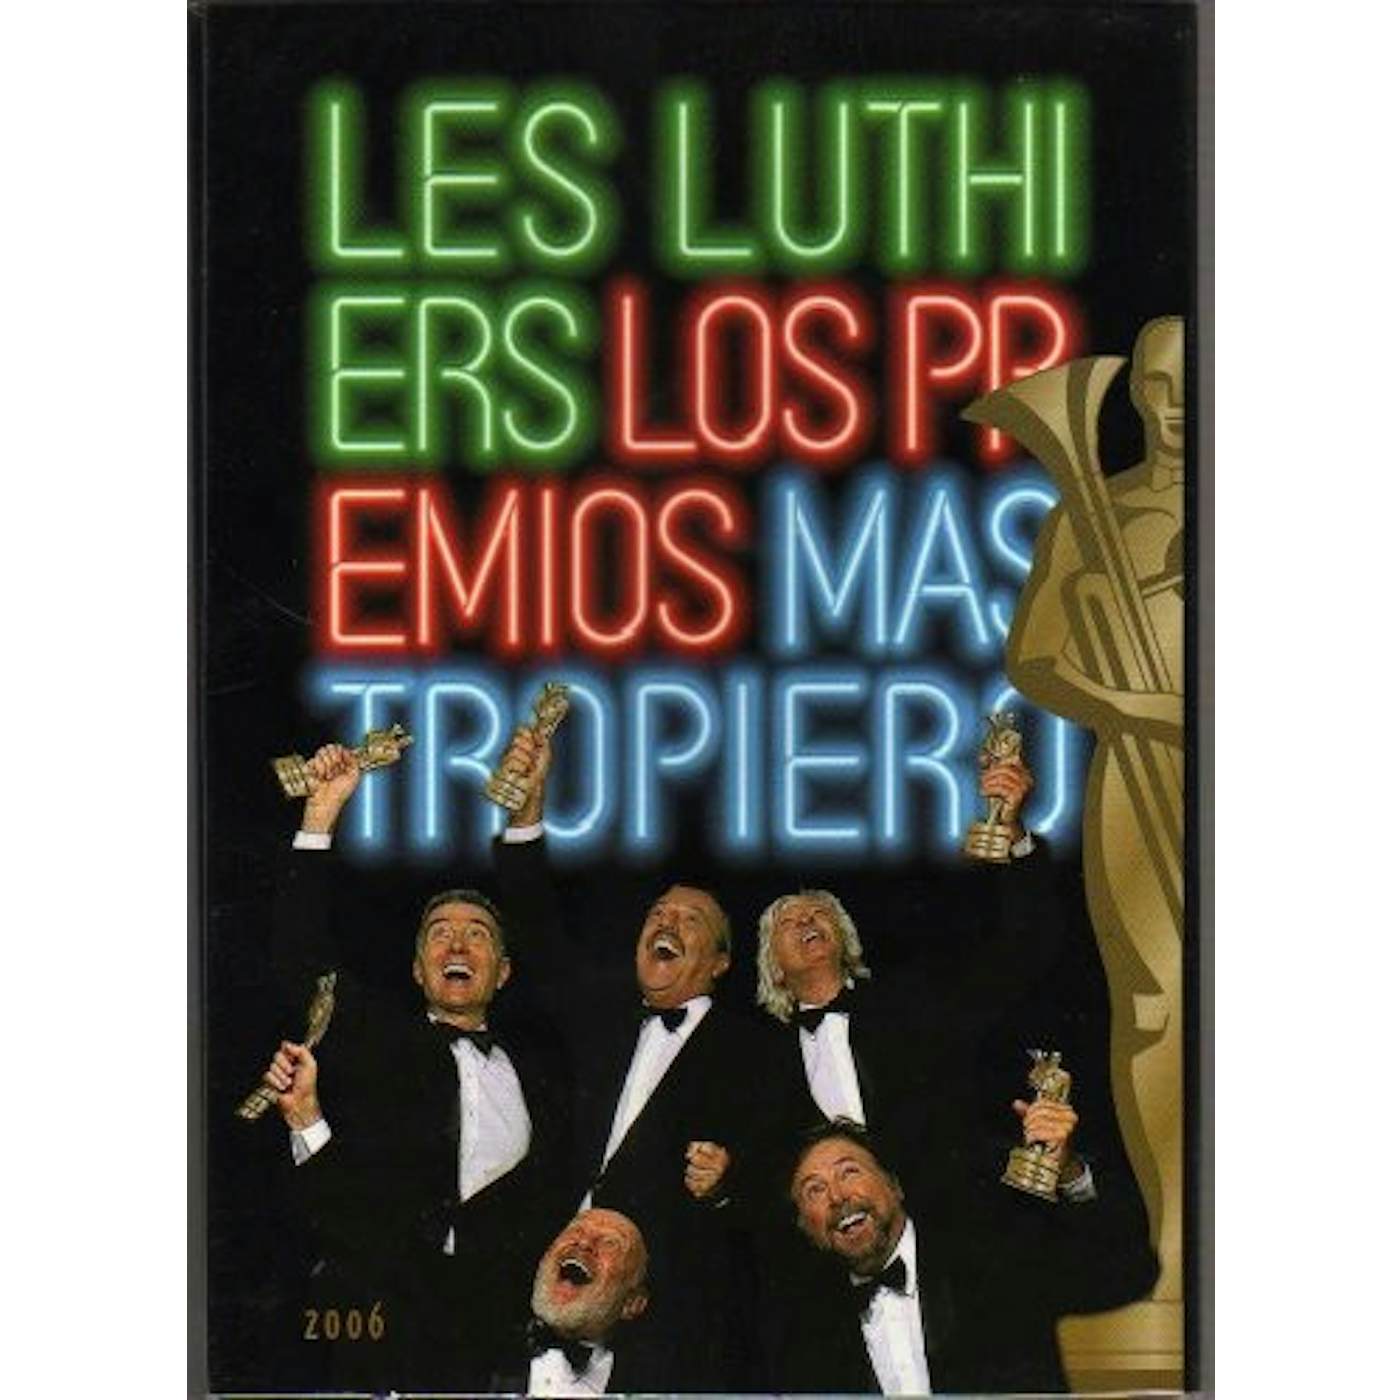 Les Luthiers LOS PREMIOS MASTROPIERO (12) DVD